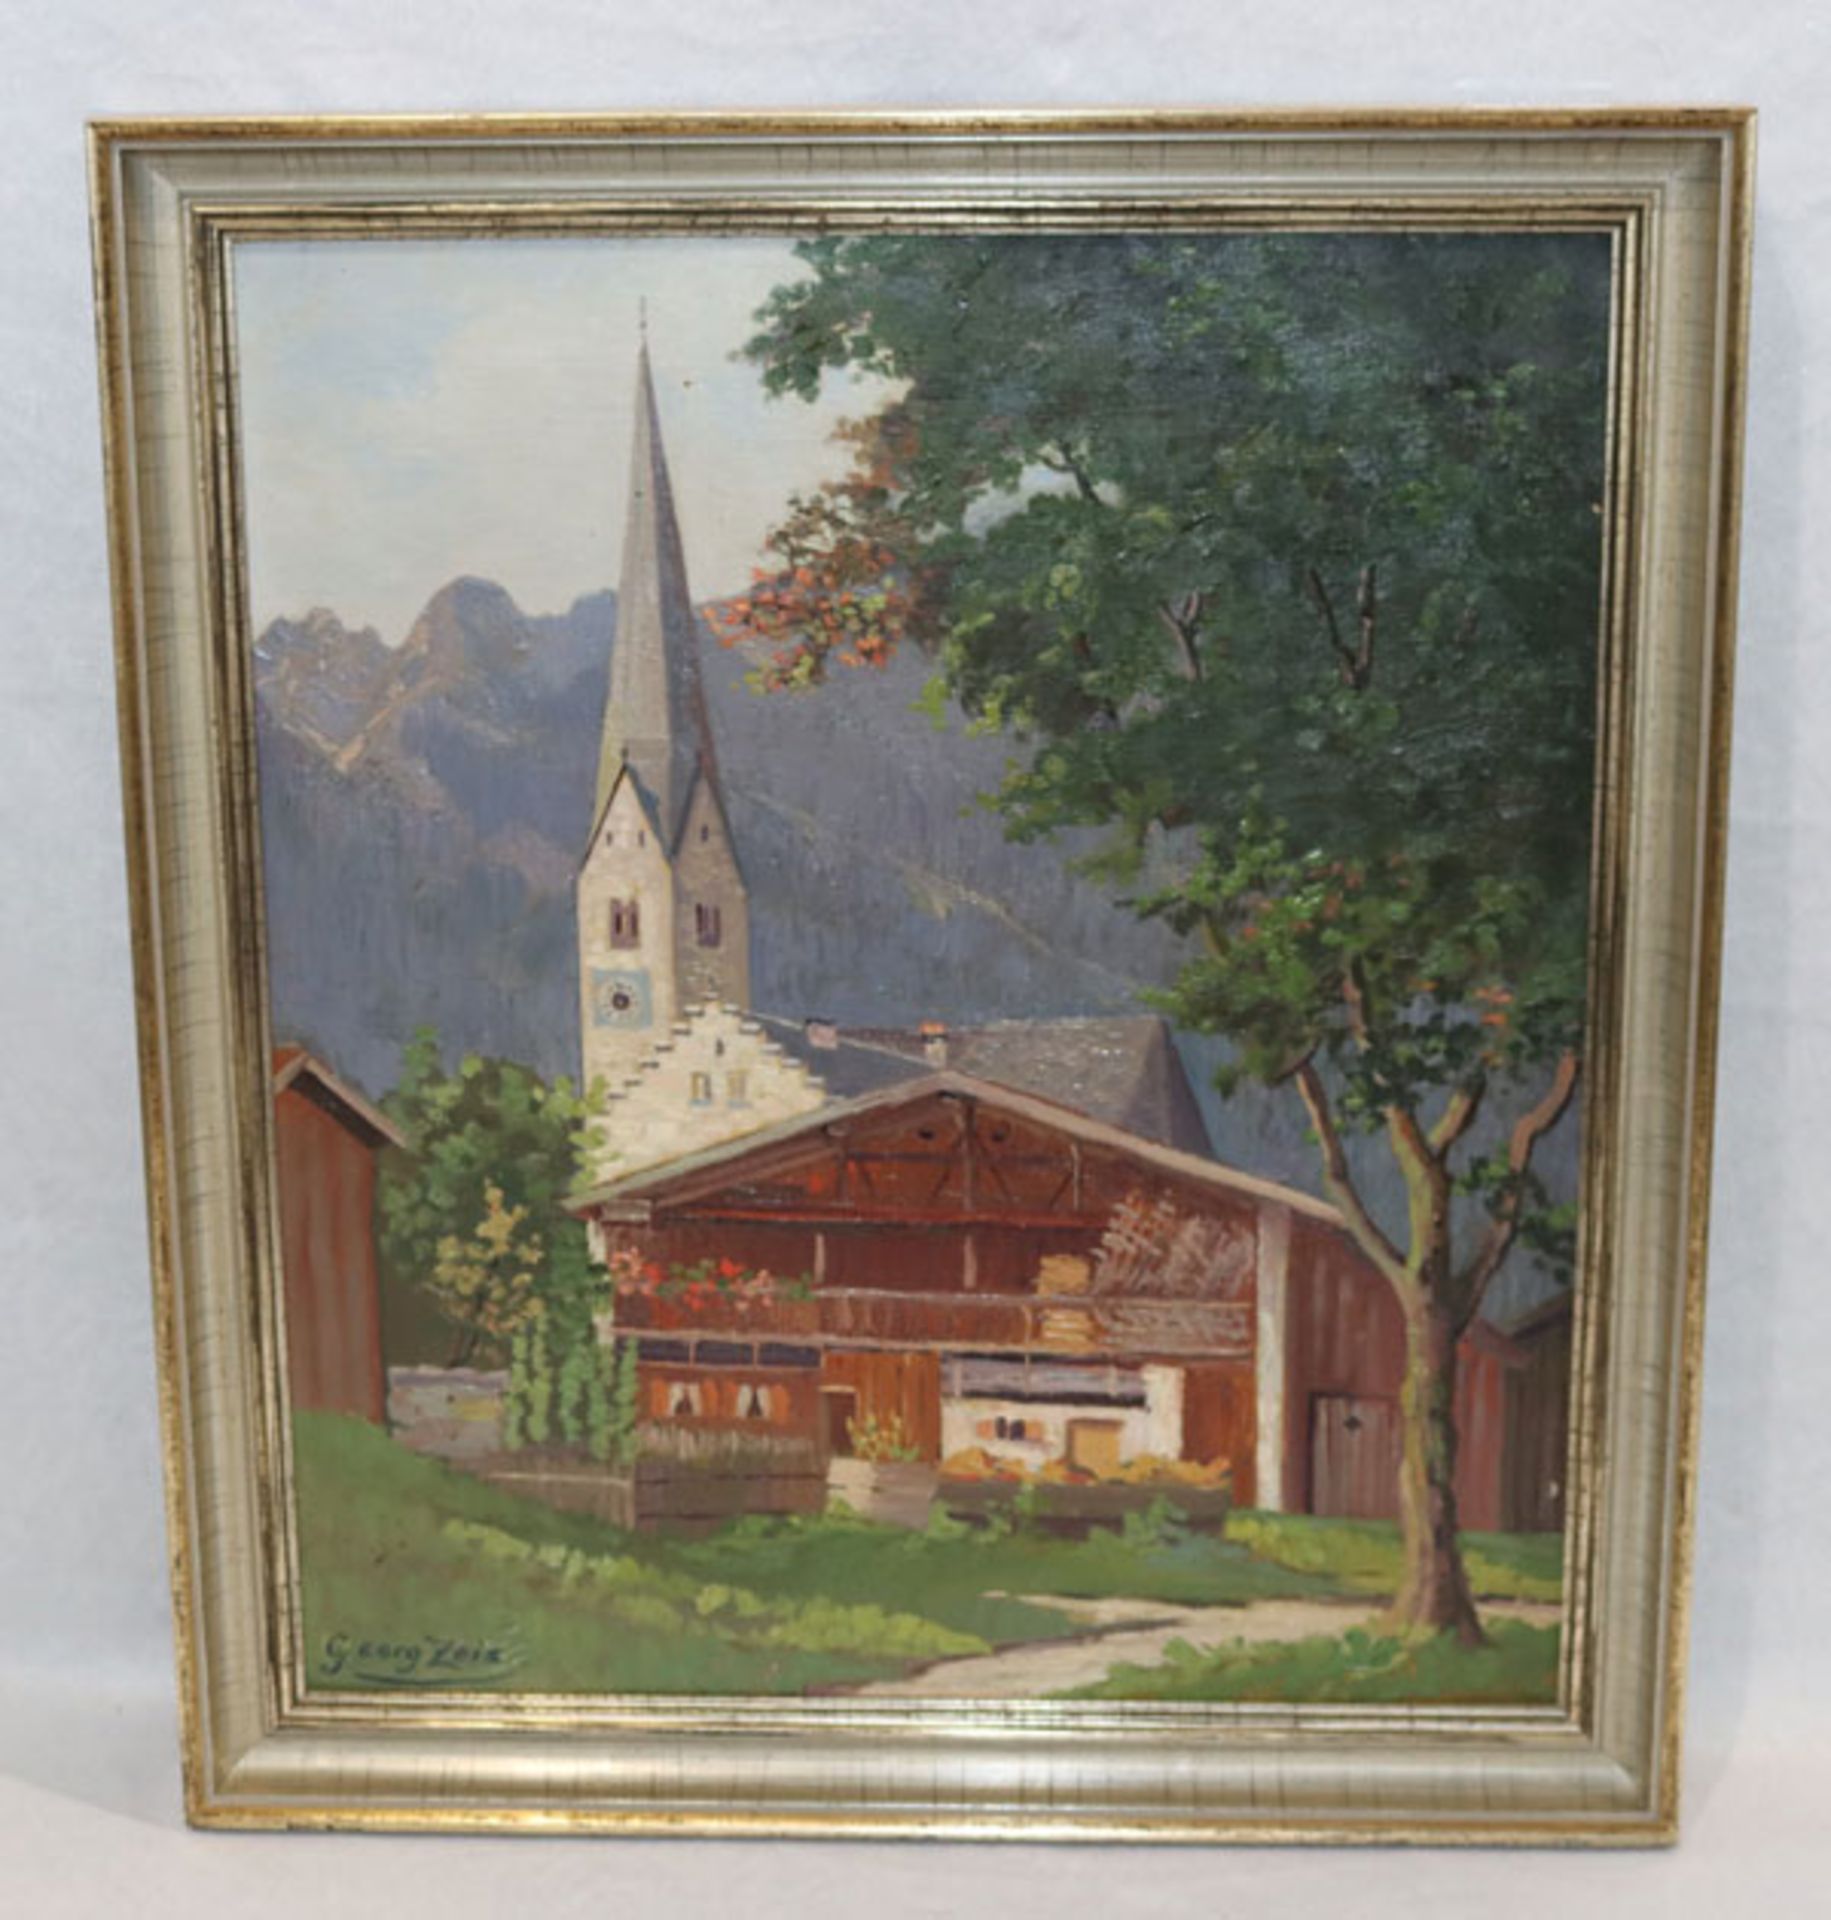 Gemälde ÖL/LW 'Alte Garmischer Kirche mit Messmerhaus', signiert Georg Zeis, Bildoberfläche teils